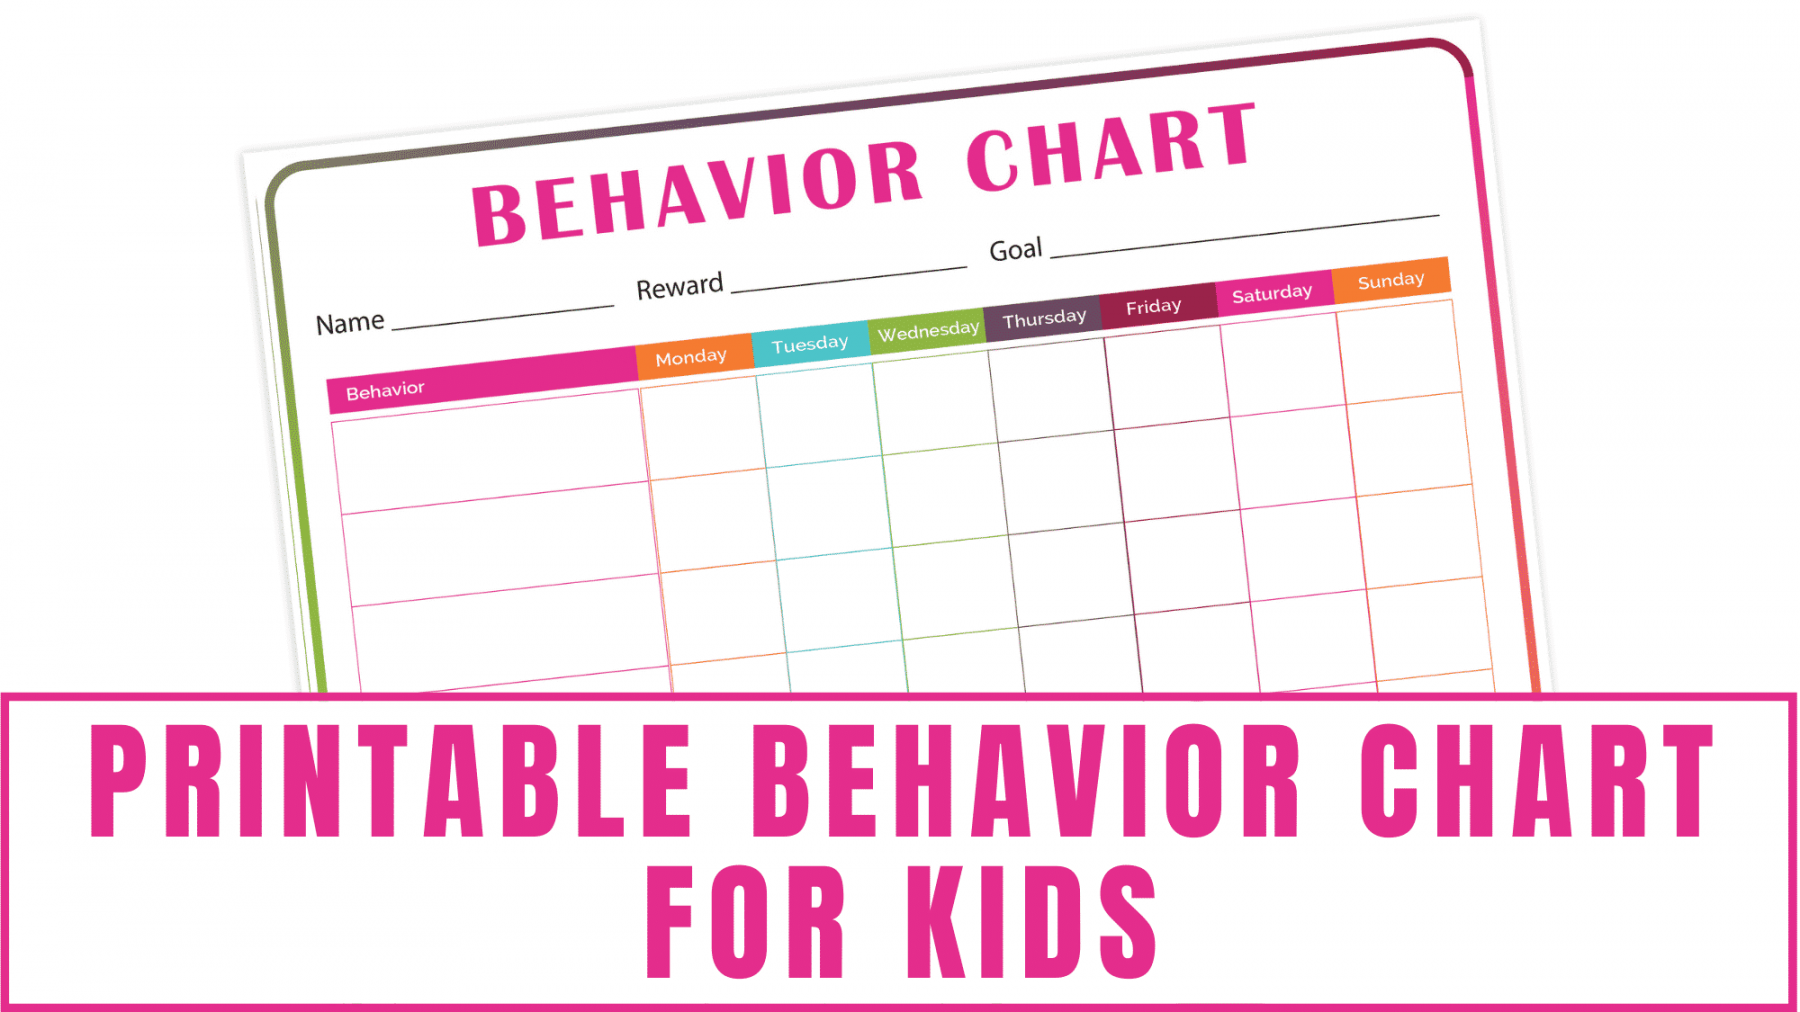 Free Printable Behavior Charts - Printable - Printable Behavior Chart for Kids - Freebie Finding Mom